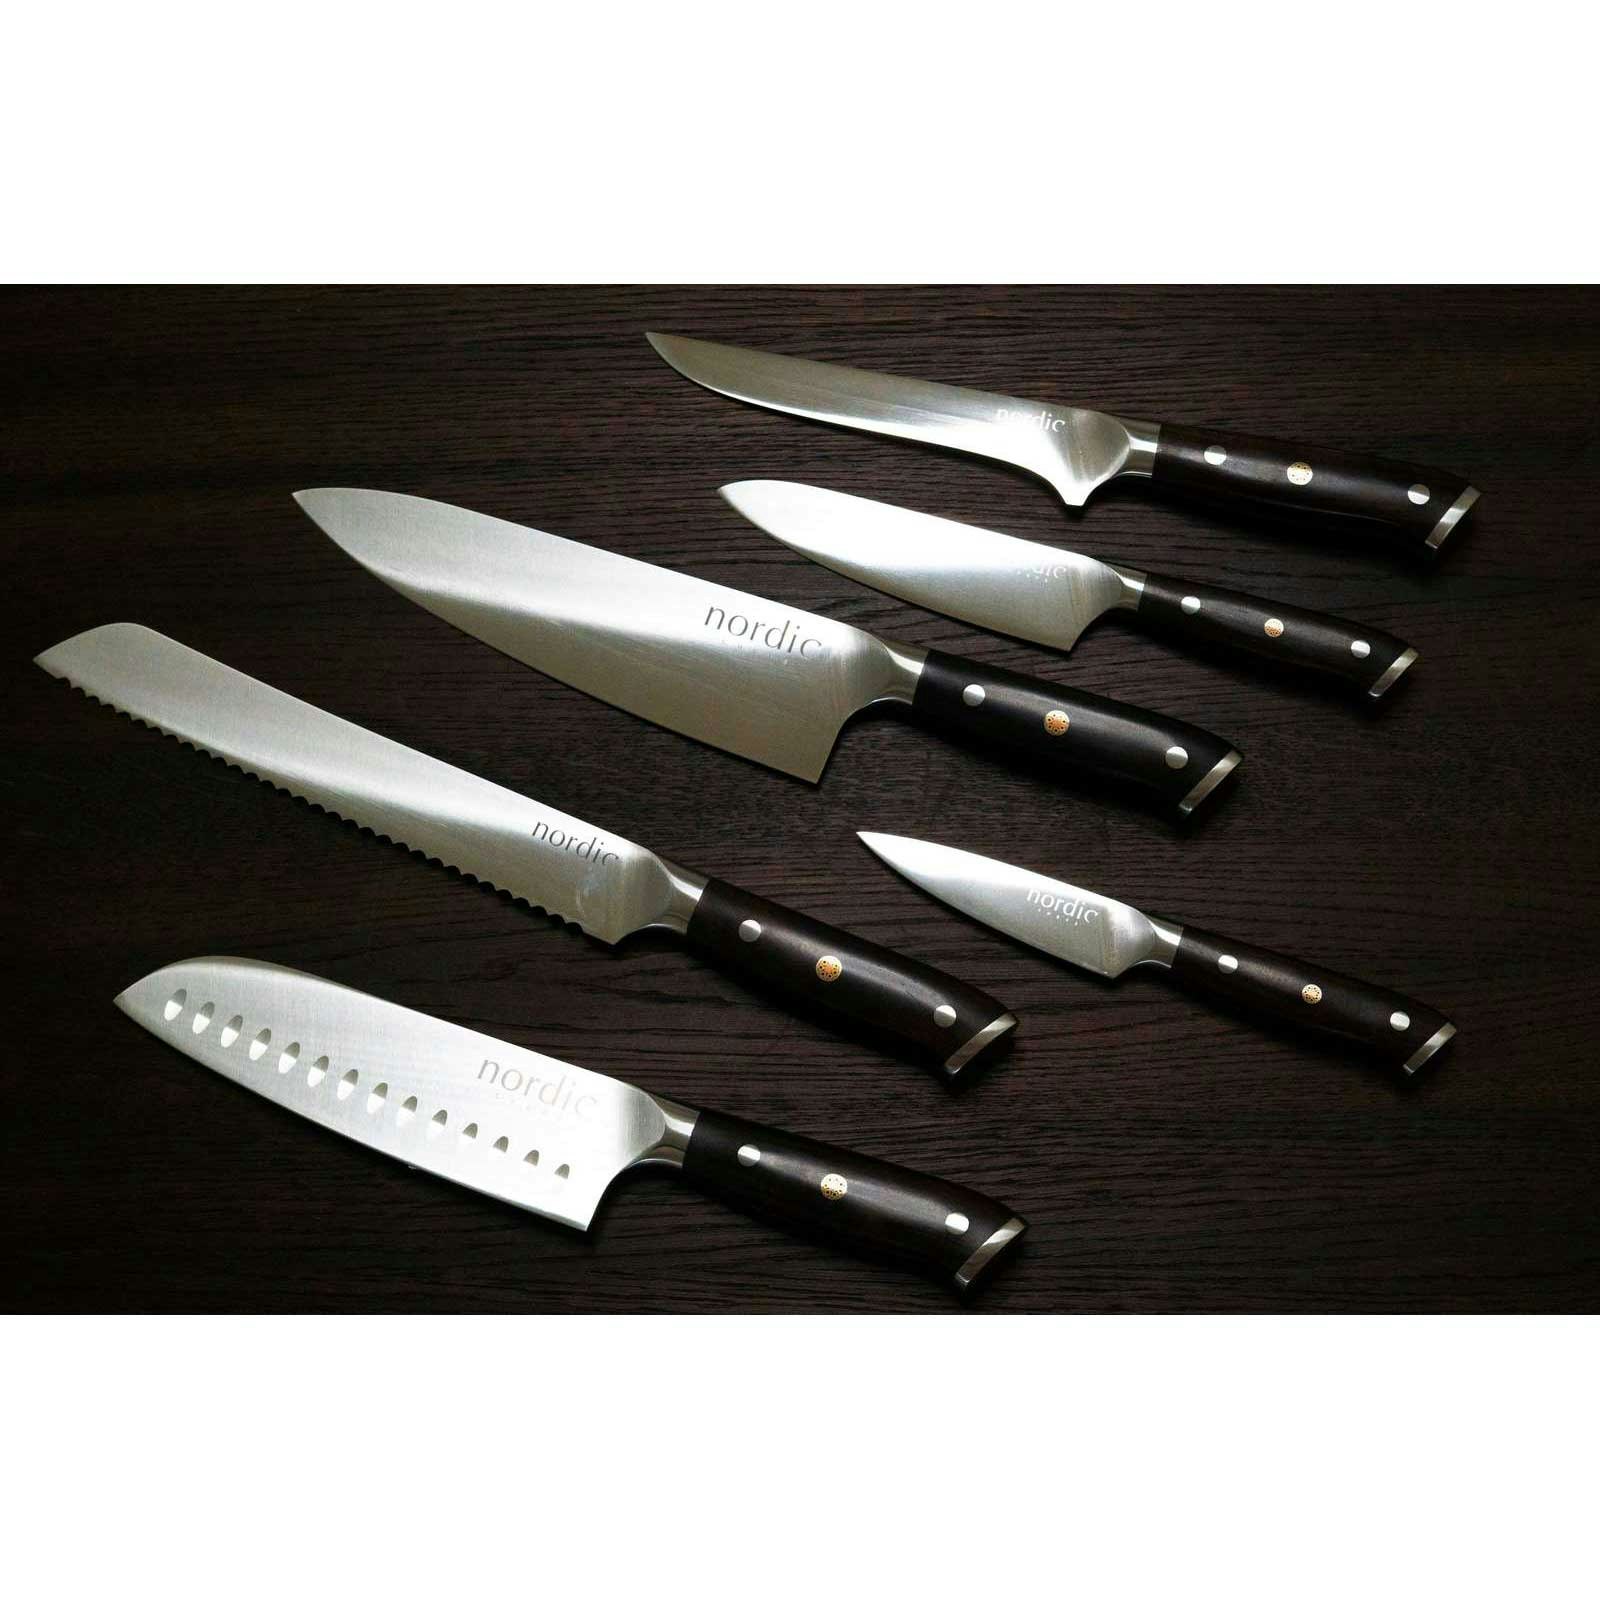 https://royaldesign.com/image/2/nordic-chef-nordic-knife-sets-2-pack-7